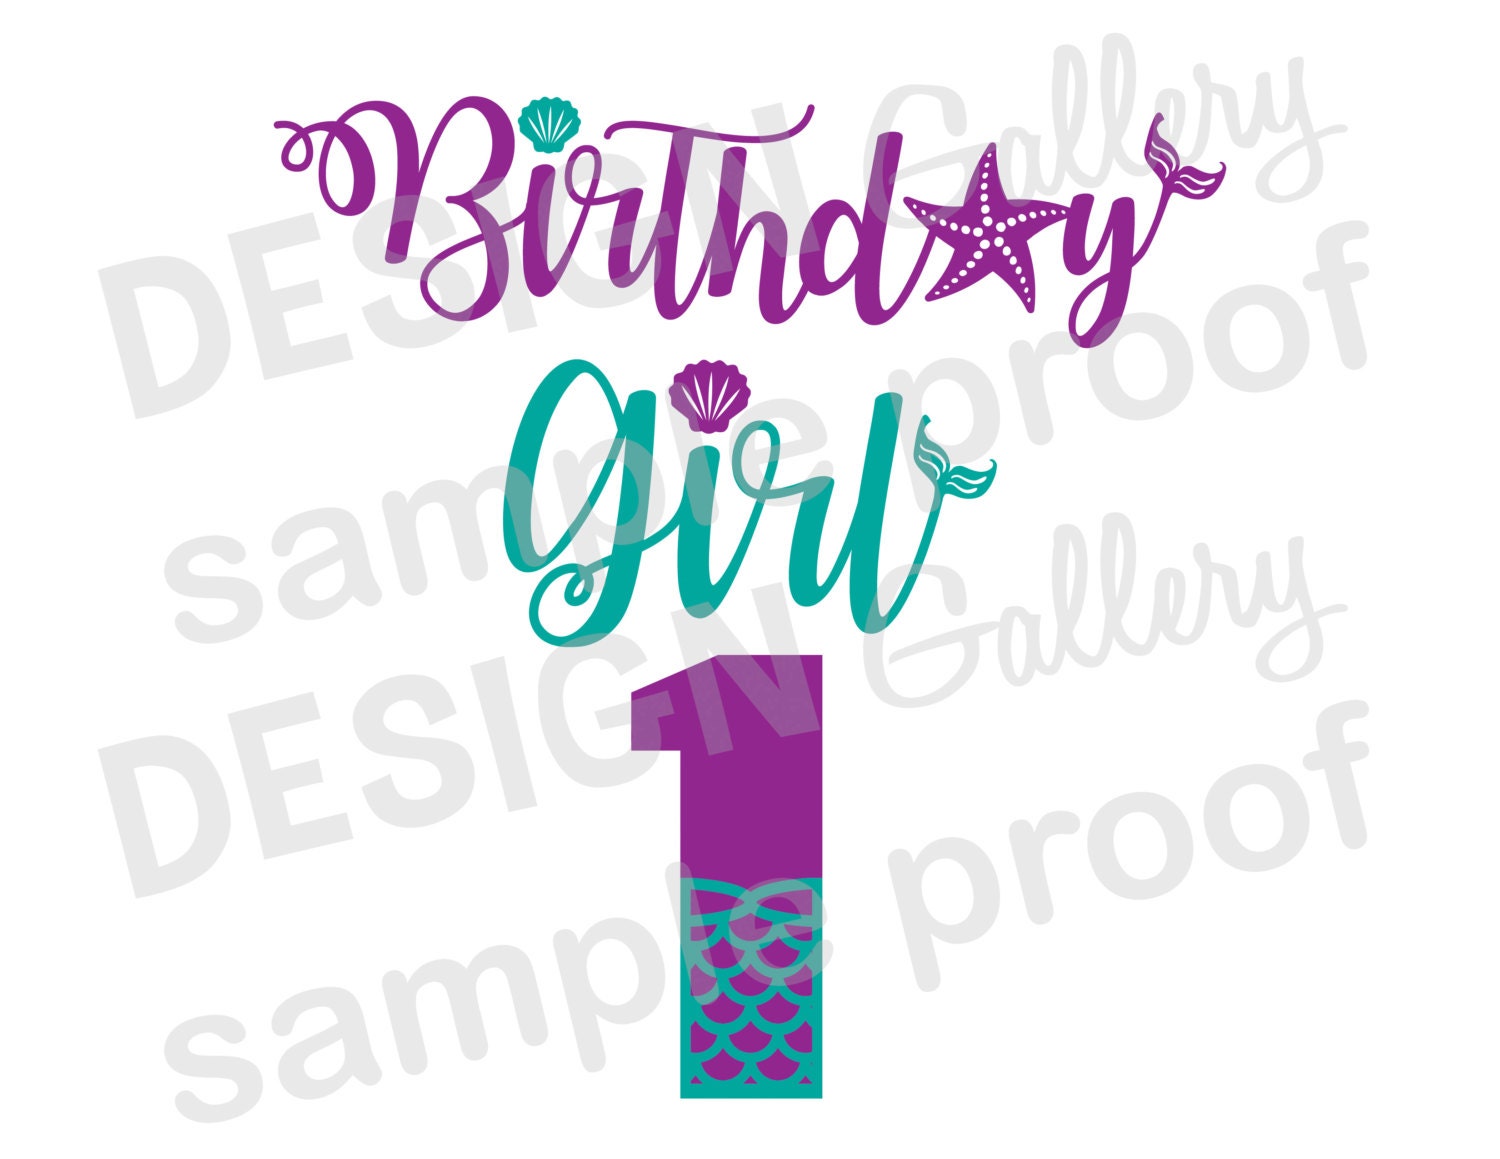 Birthday Girl 1 one Mermaid style image JPG png & SVG